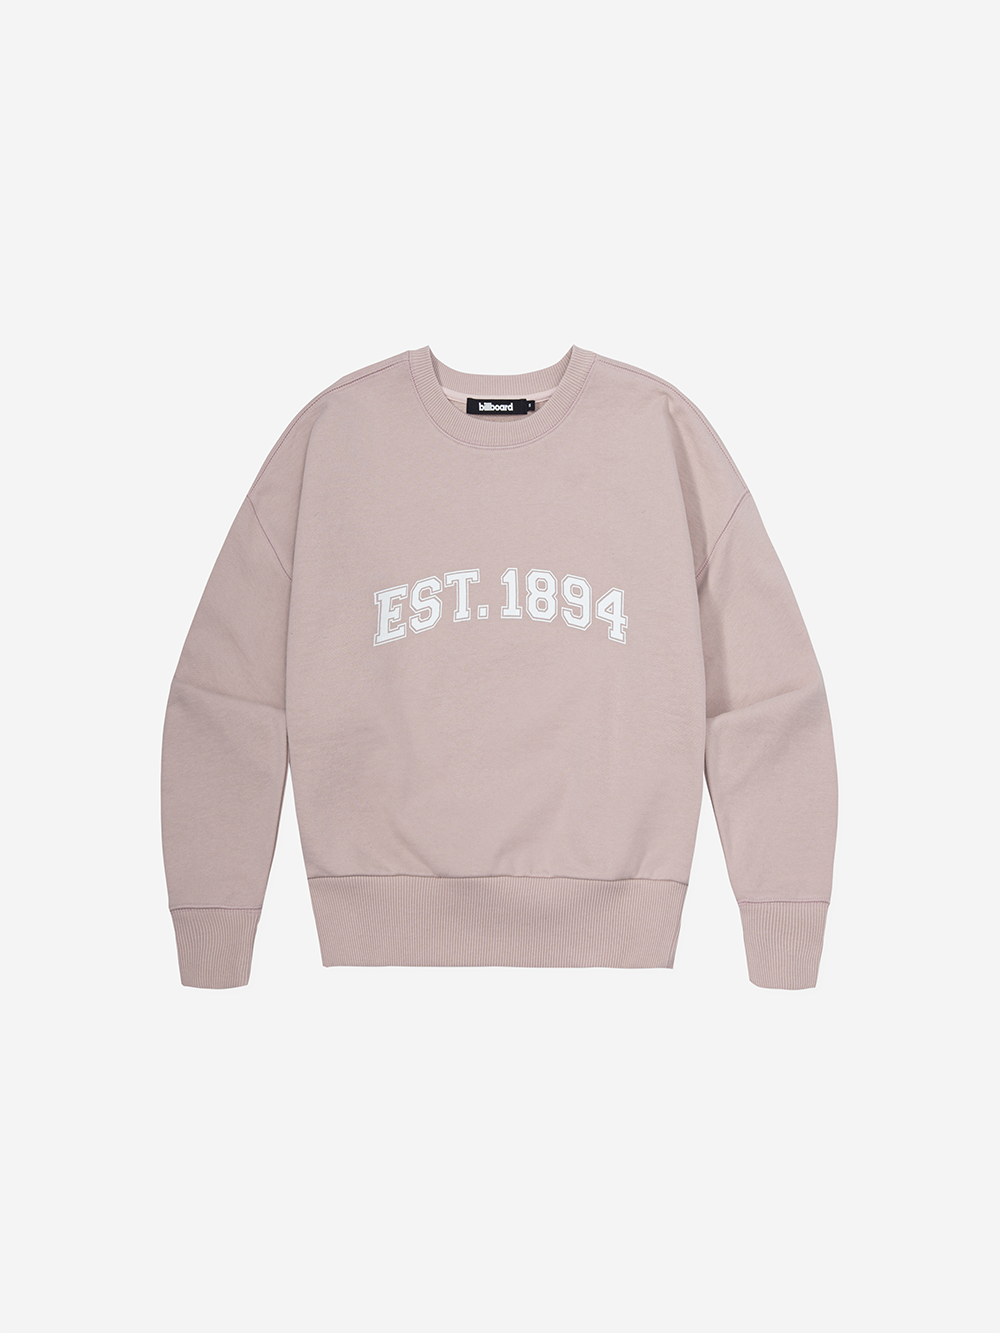 EST1894 Crop Sweatshirt_Pink